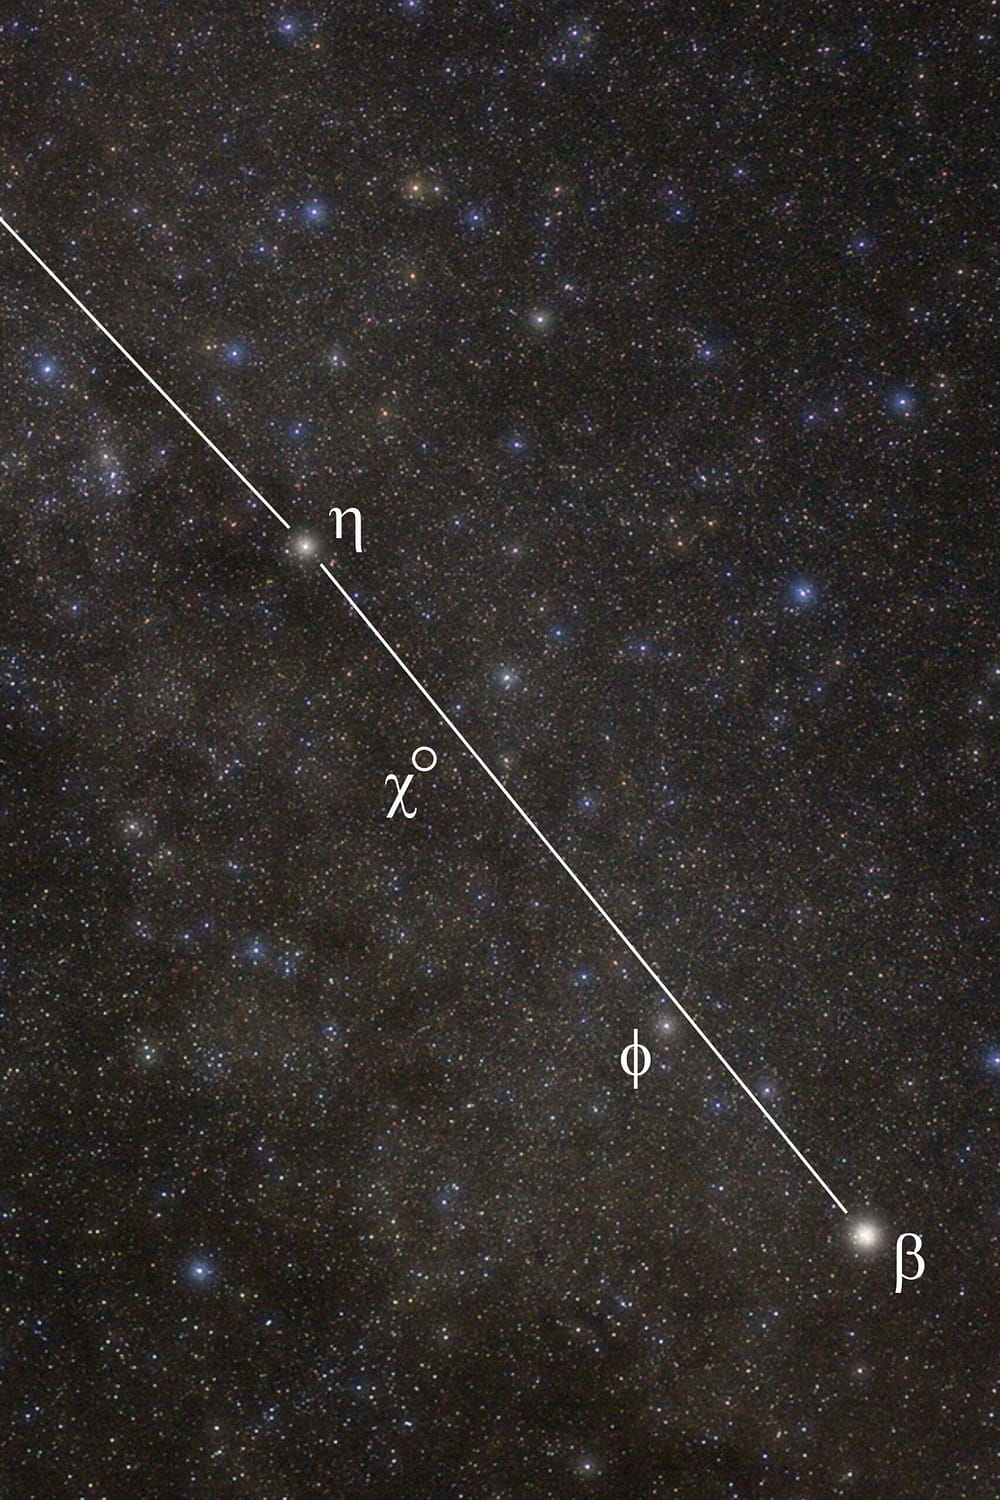 Der Veränderliche Chi Cygni liegt im "Hals des Schwans" zwischen den Sternen Eta und Beta Cygni inmitten eines dichten Sternenfelds der Milchstraße